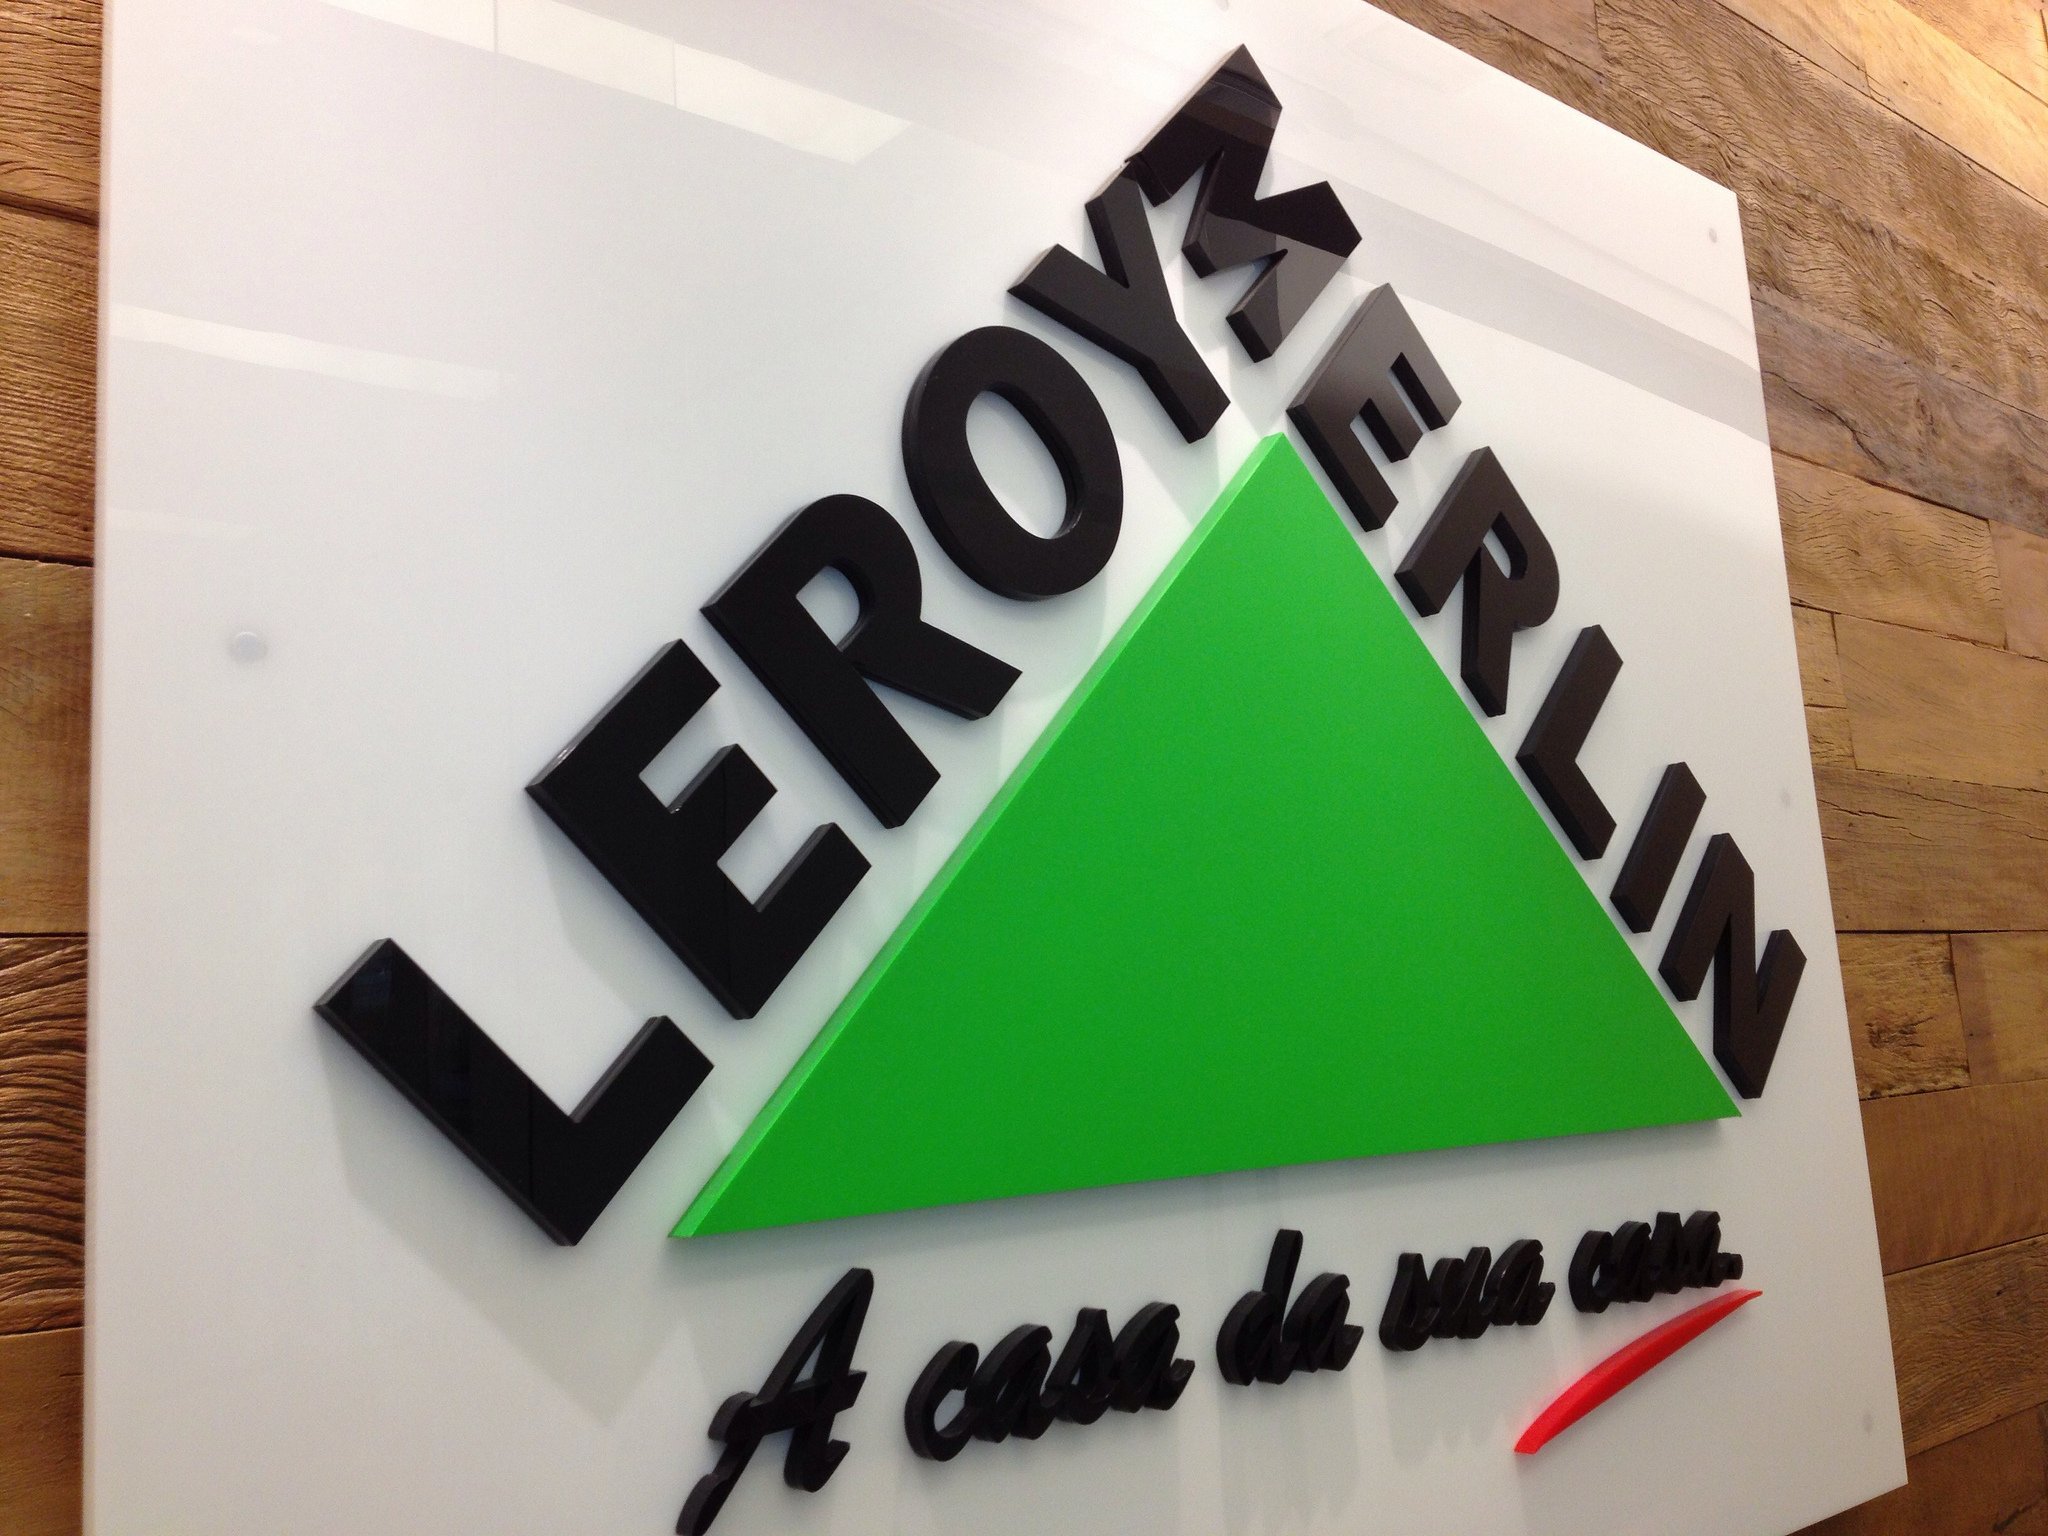 Leroy Merlin invierte 5 millones en un nuevo "concepto" de tienda en Barcelona